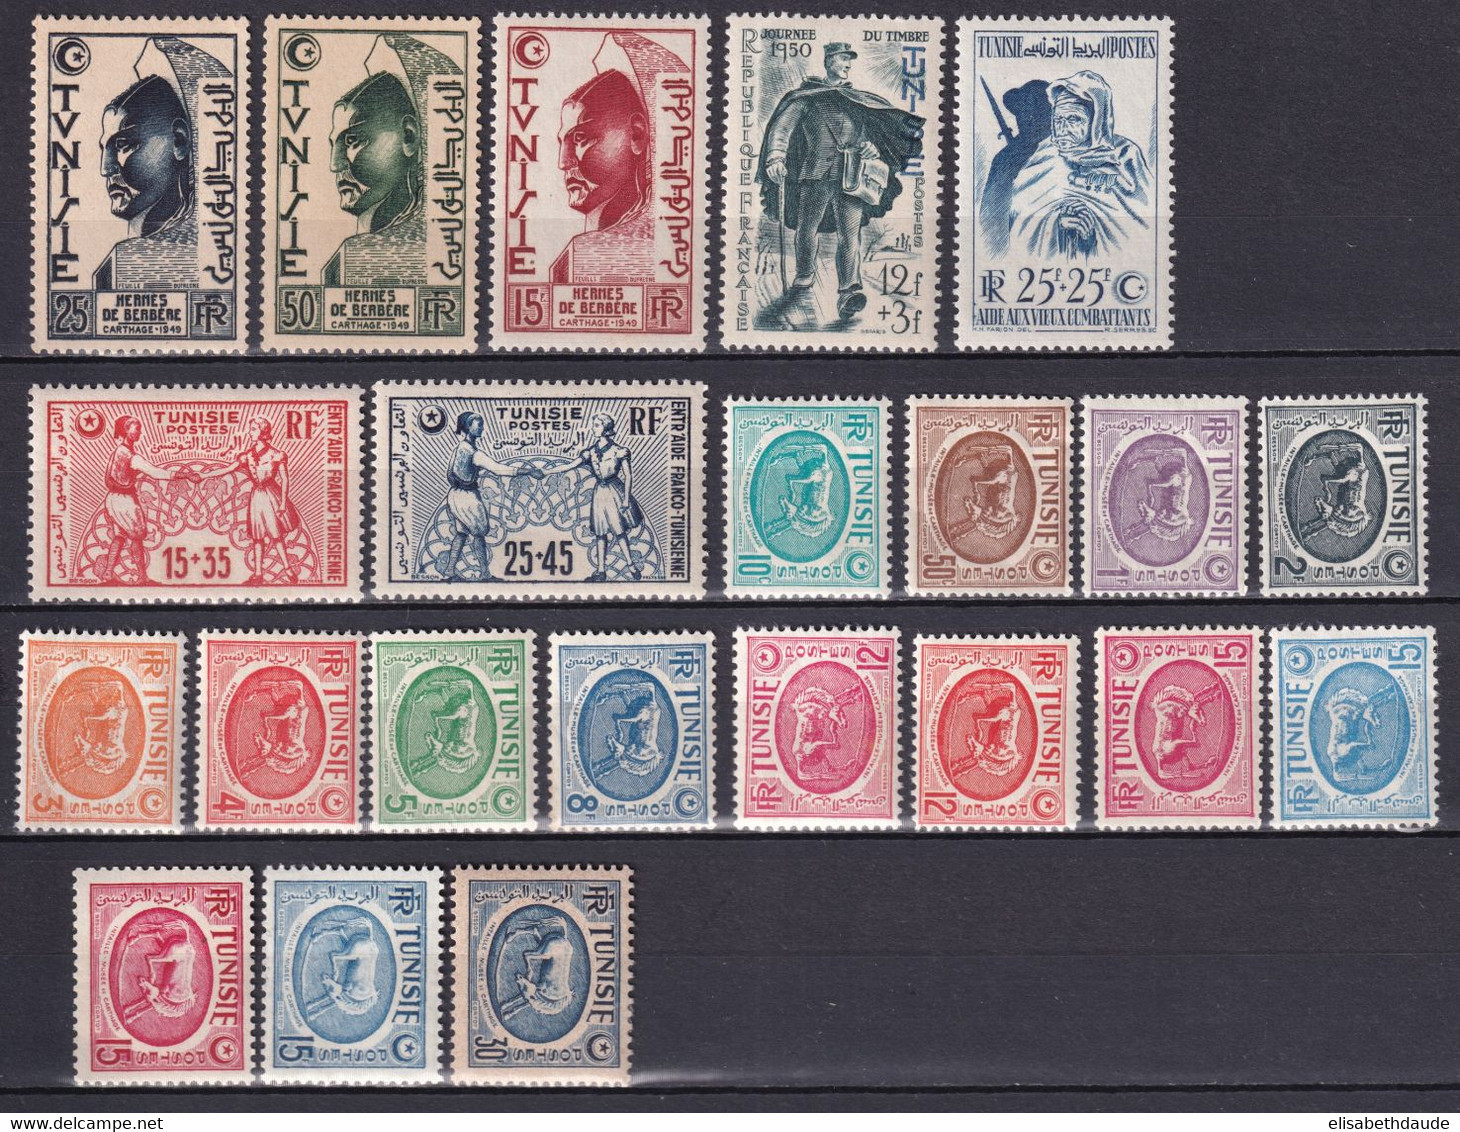 TUNISIE - 1950 - ANNEE COMPLETE - YVERT N° 334/348 * MLH - COTE = 30.5 EUR. - Nuovi